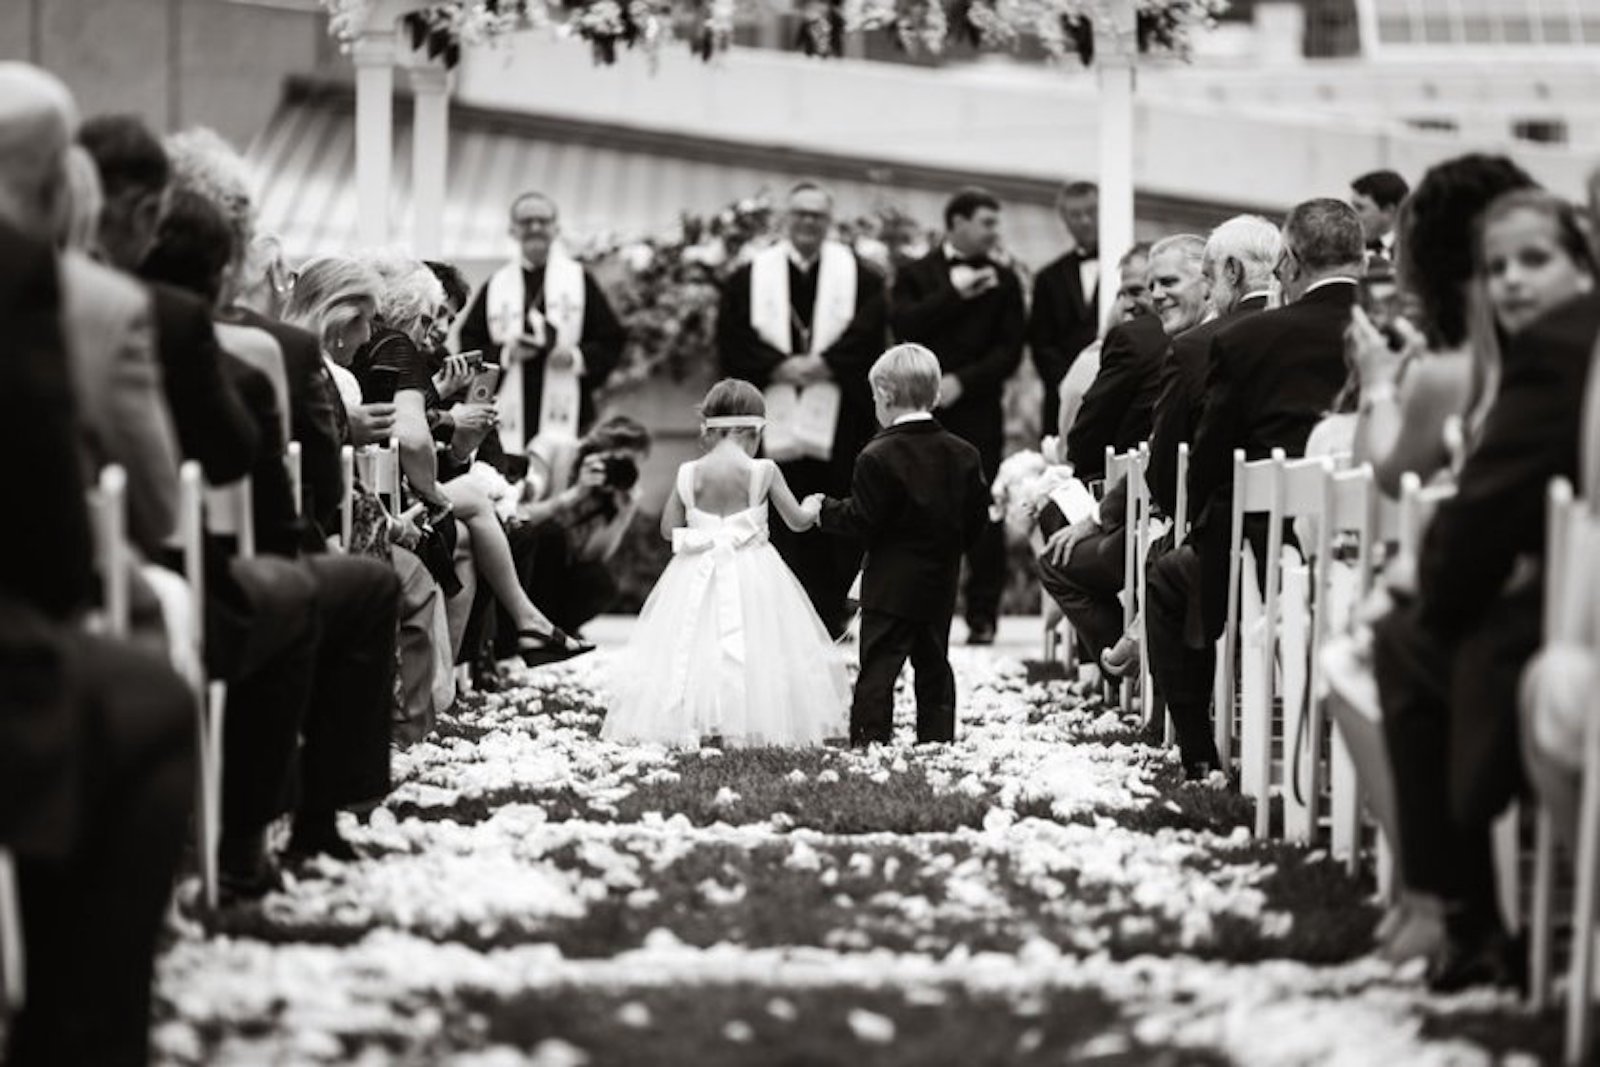 flower girl and ring bearer walking down flower covered aisle at wedding